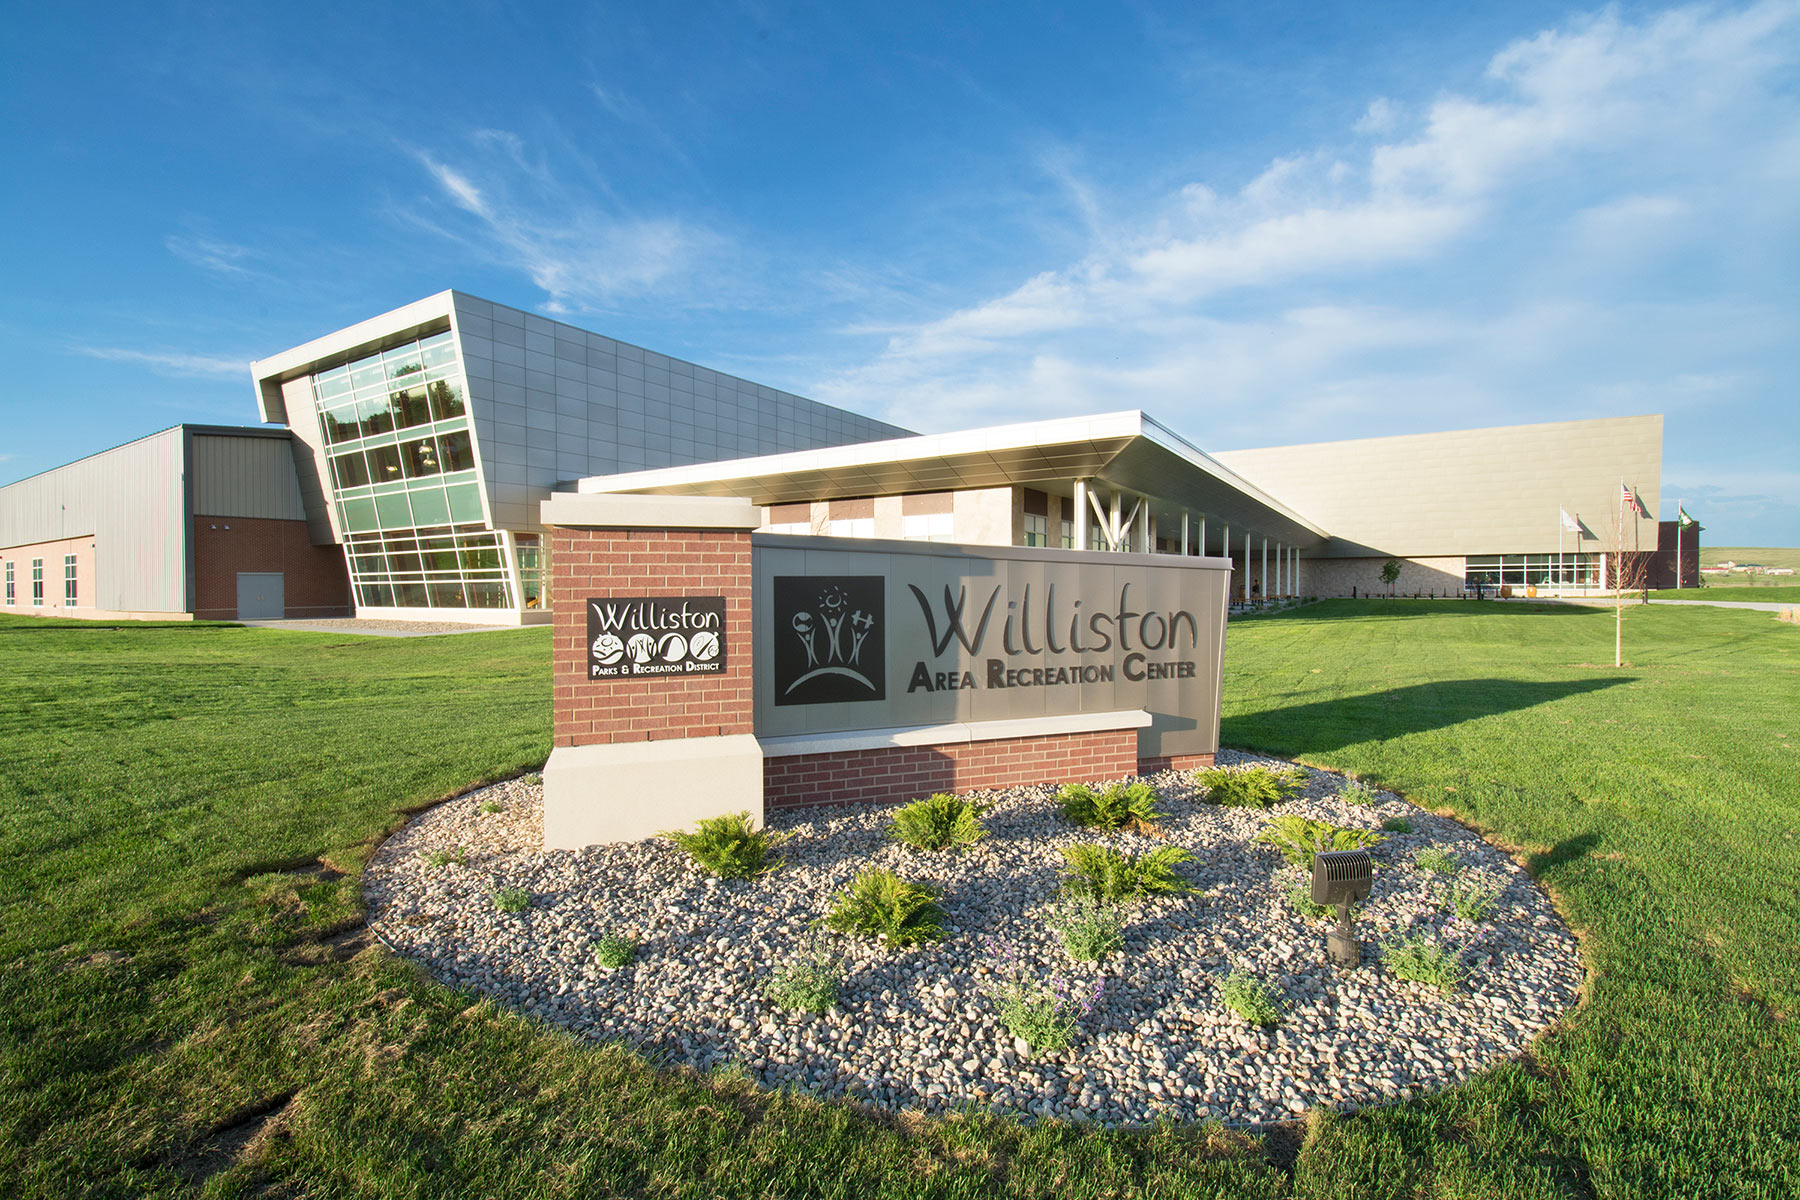 Williston Area Rec Center - Exterior Signage